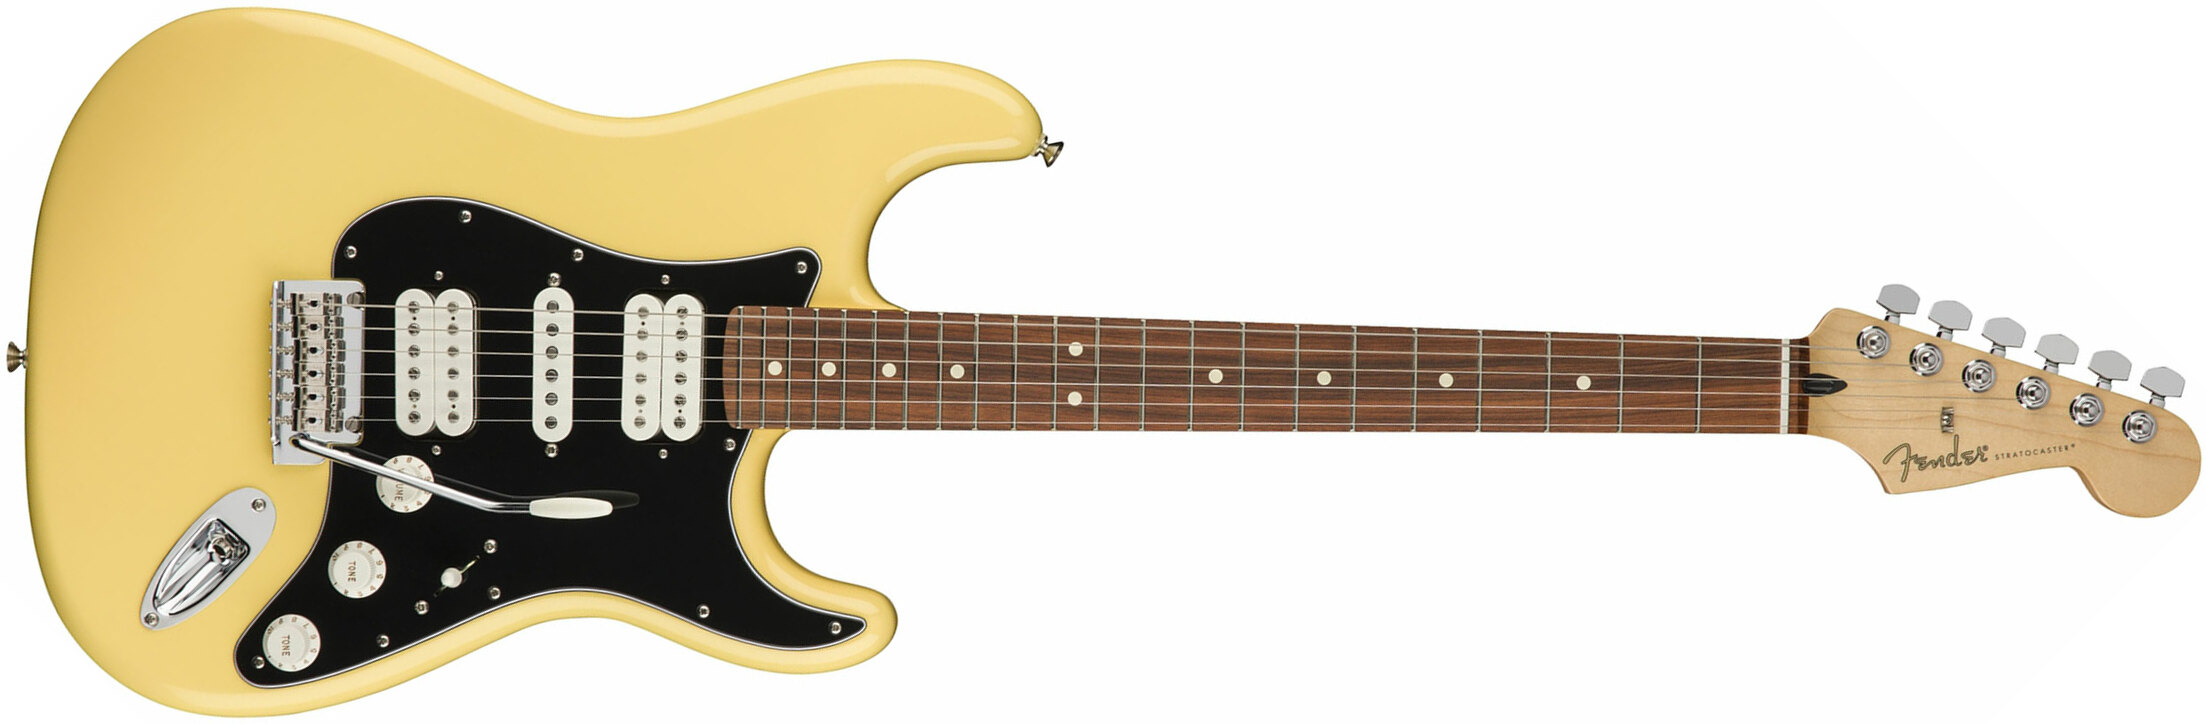 Fender Strat Player Mex Hsh Pf - Buttercream - Elektrische gitaar in Str-vorm - Main picture